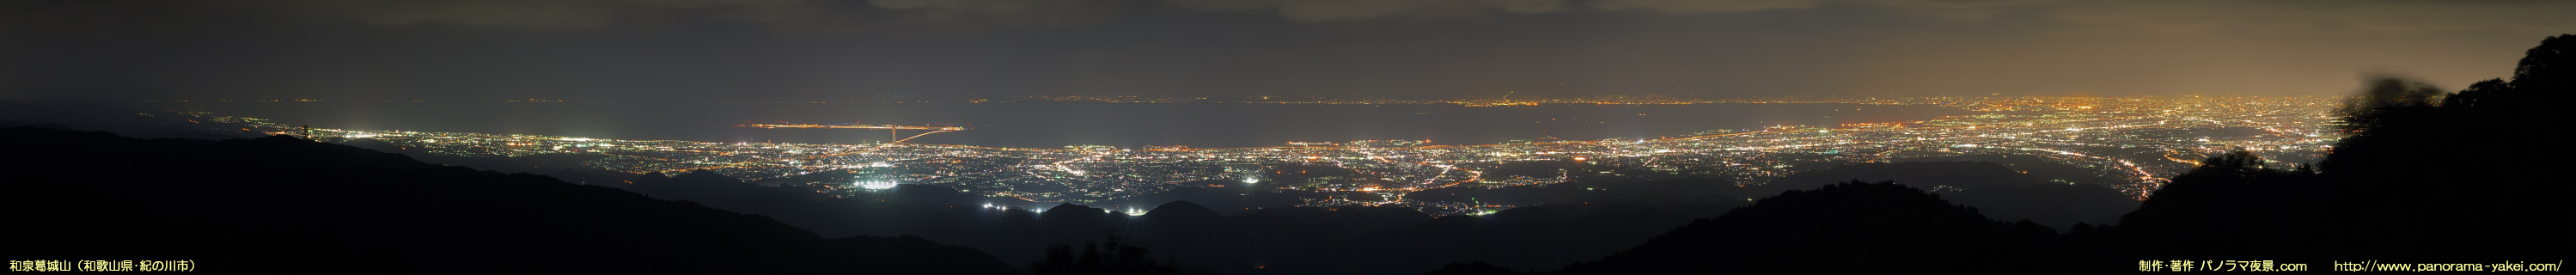 和泉葛城山展望台からのパノラマ夜景写真 ～大阪湾の夜景～